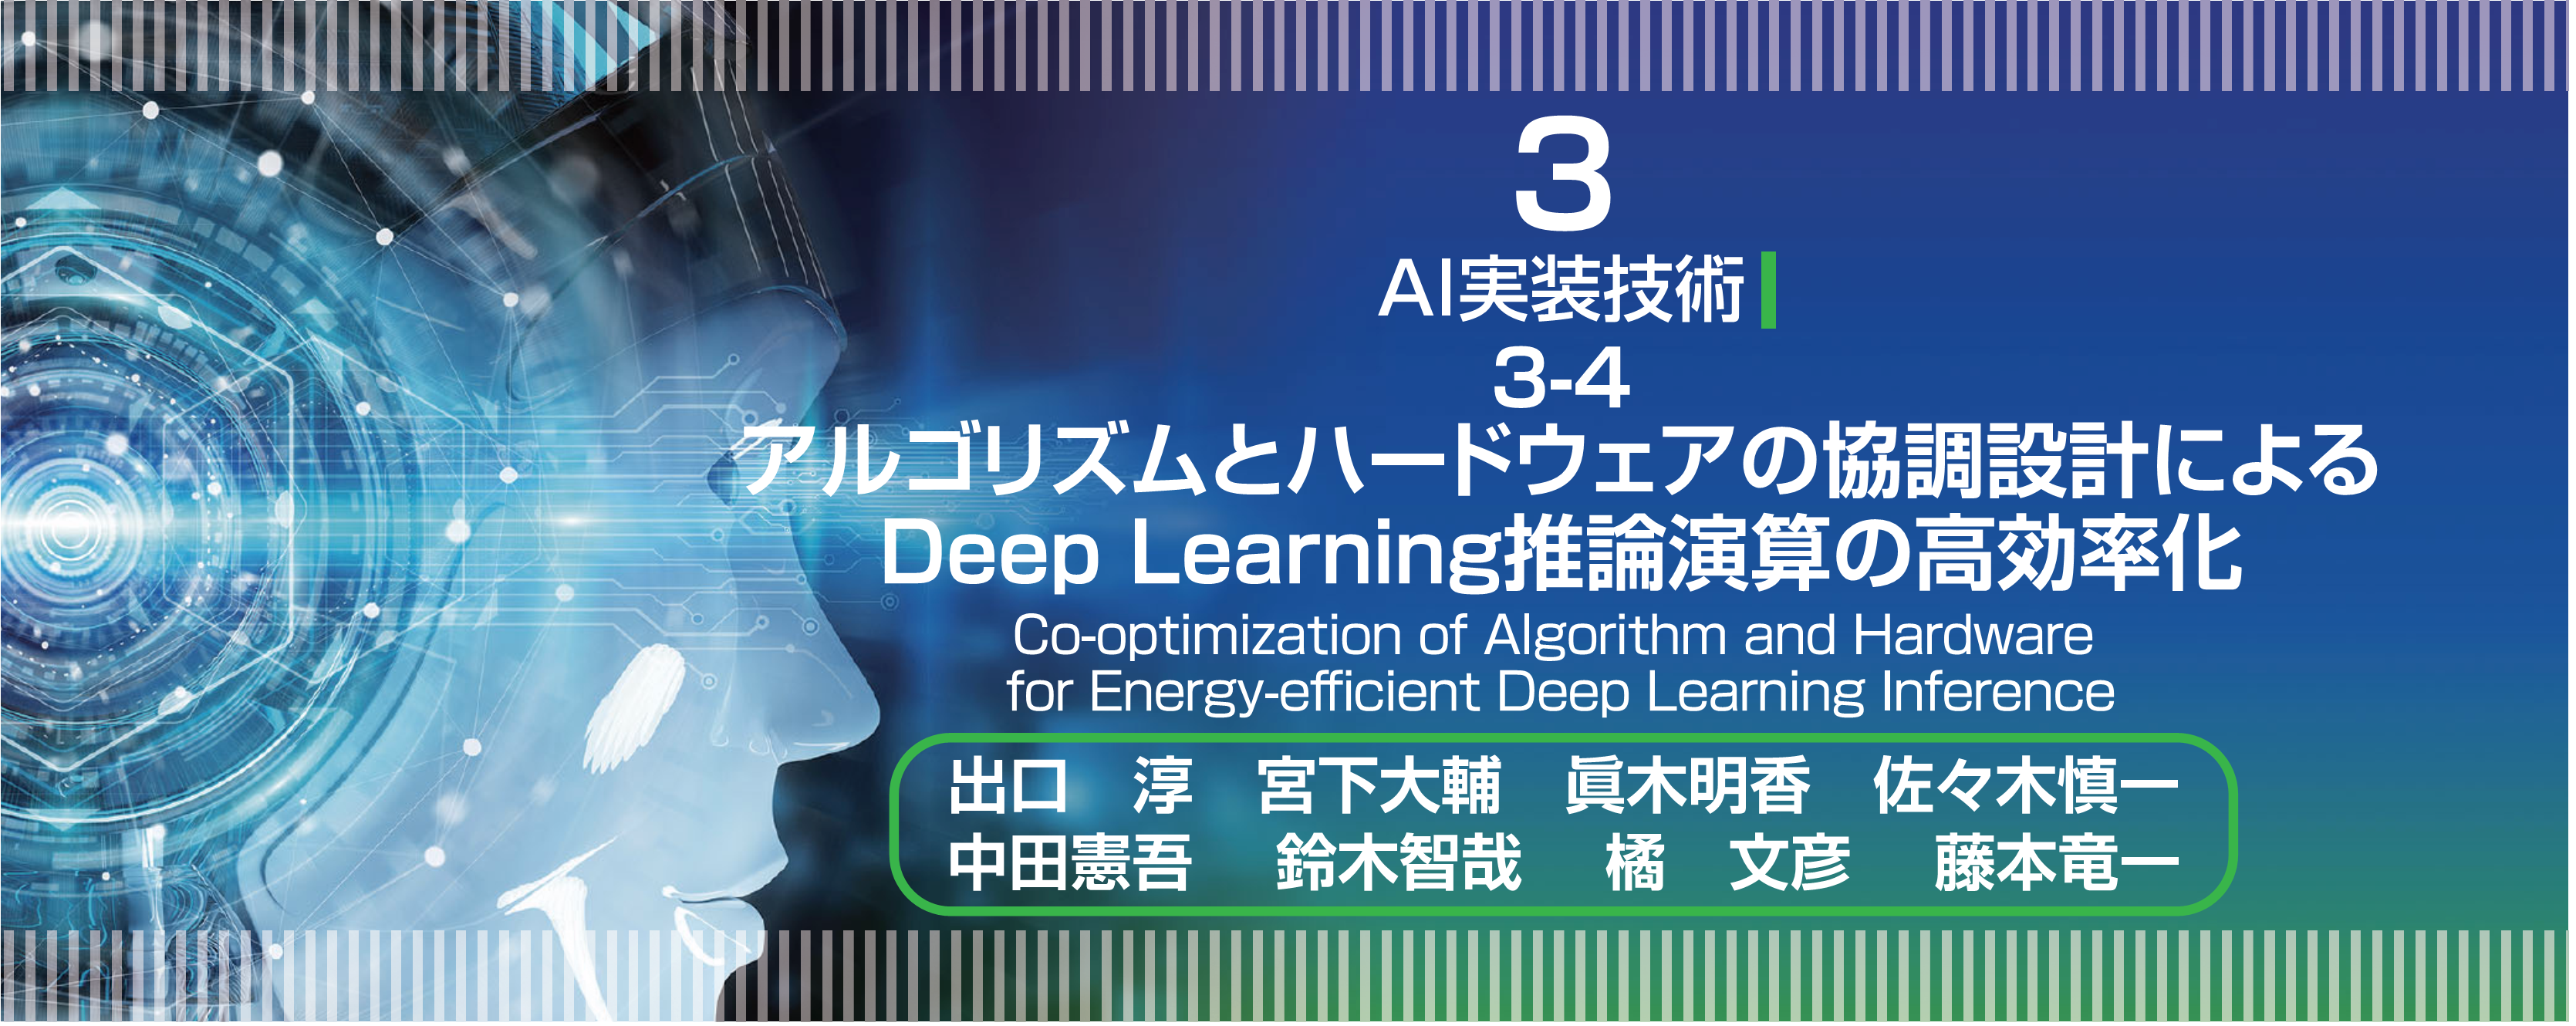 特集 3-4　アルゴリズムとハードウェアの協調設計によるDeep Learning推論演算の高効率化